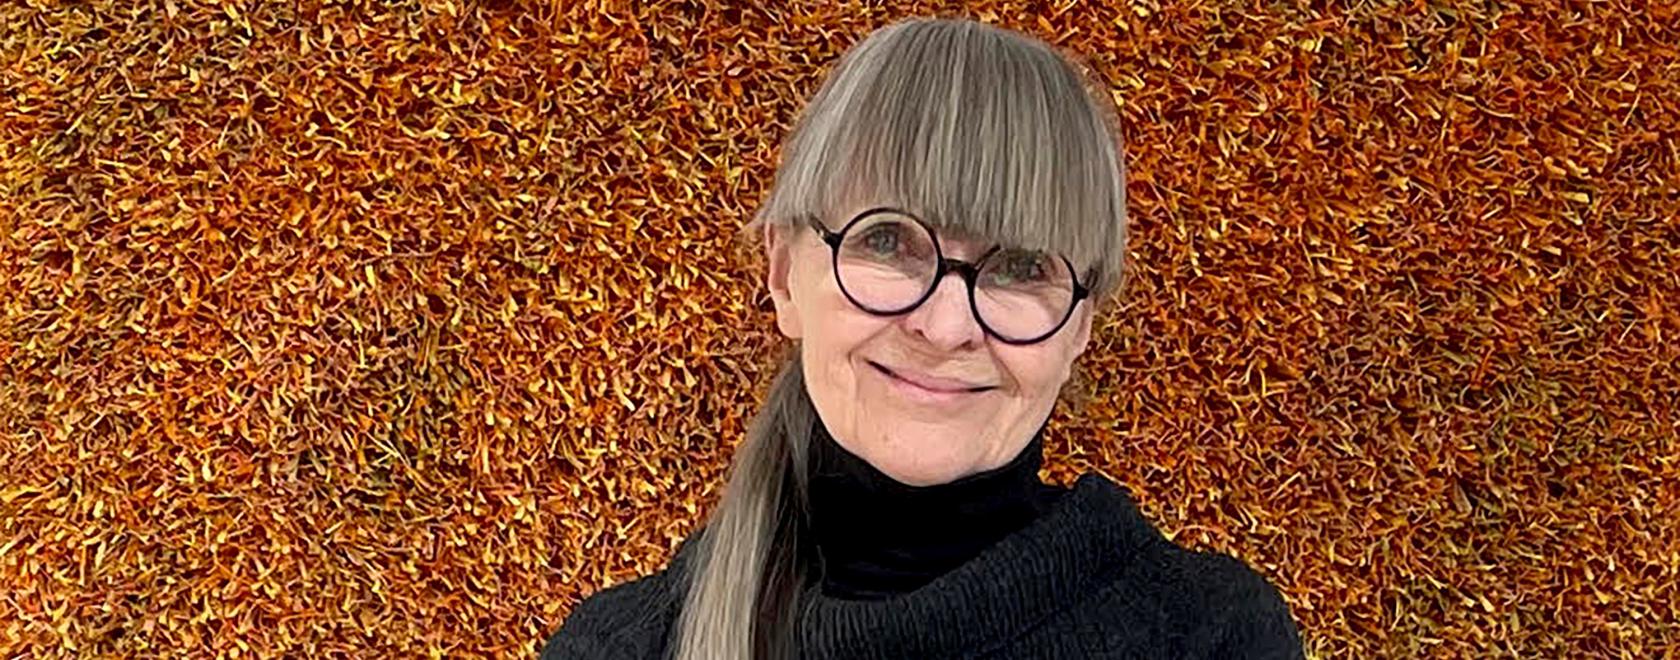 Tekstiilitaiteilija Irene Välimäki sai Keski-Pohjanmaan rahaston kulttuuripalkinnon vuonna 2022.